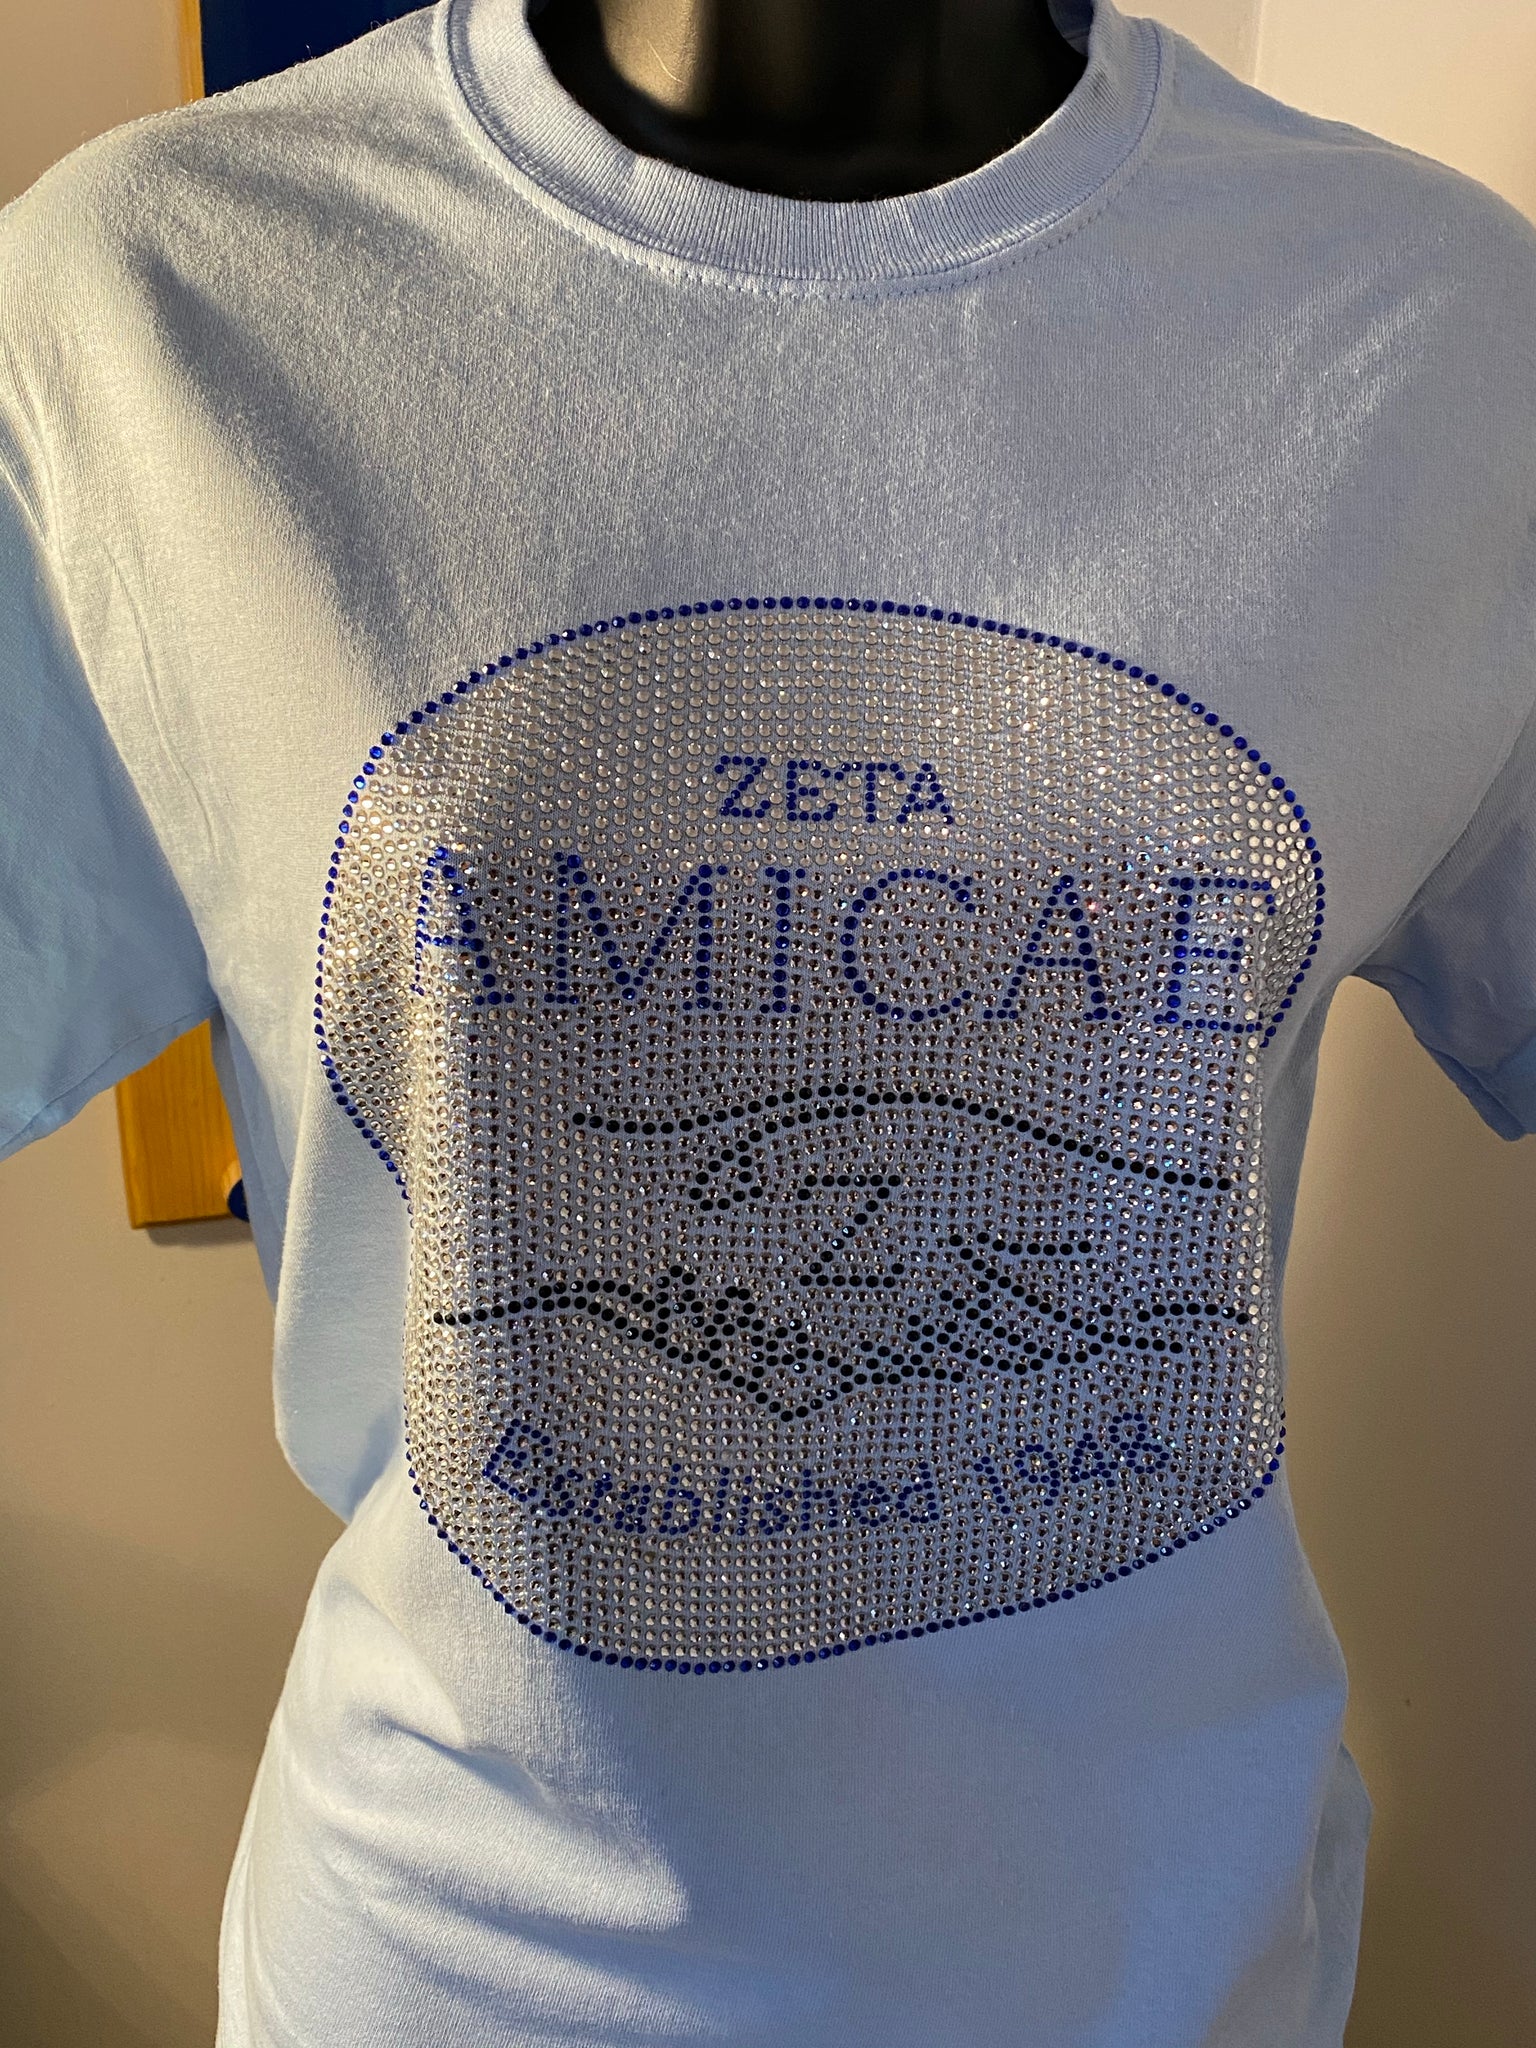 Amicae bling shirt – JLJ Concierge Services